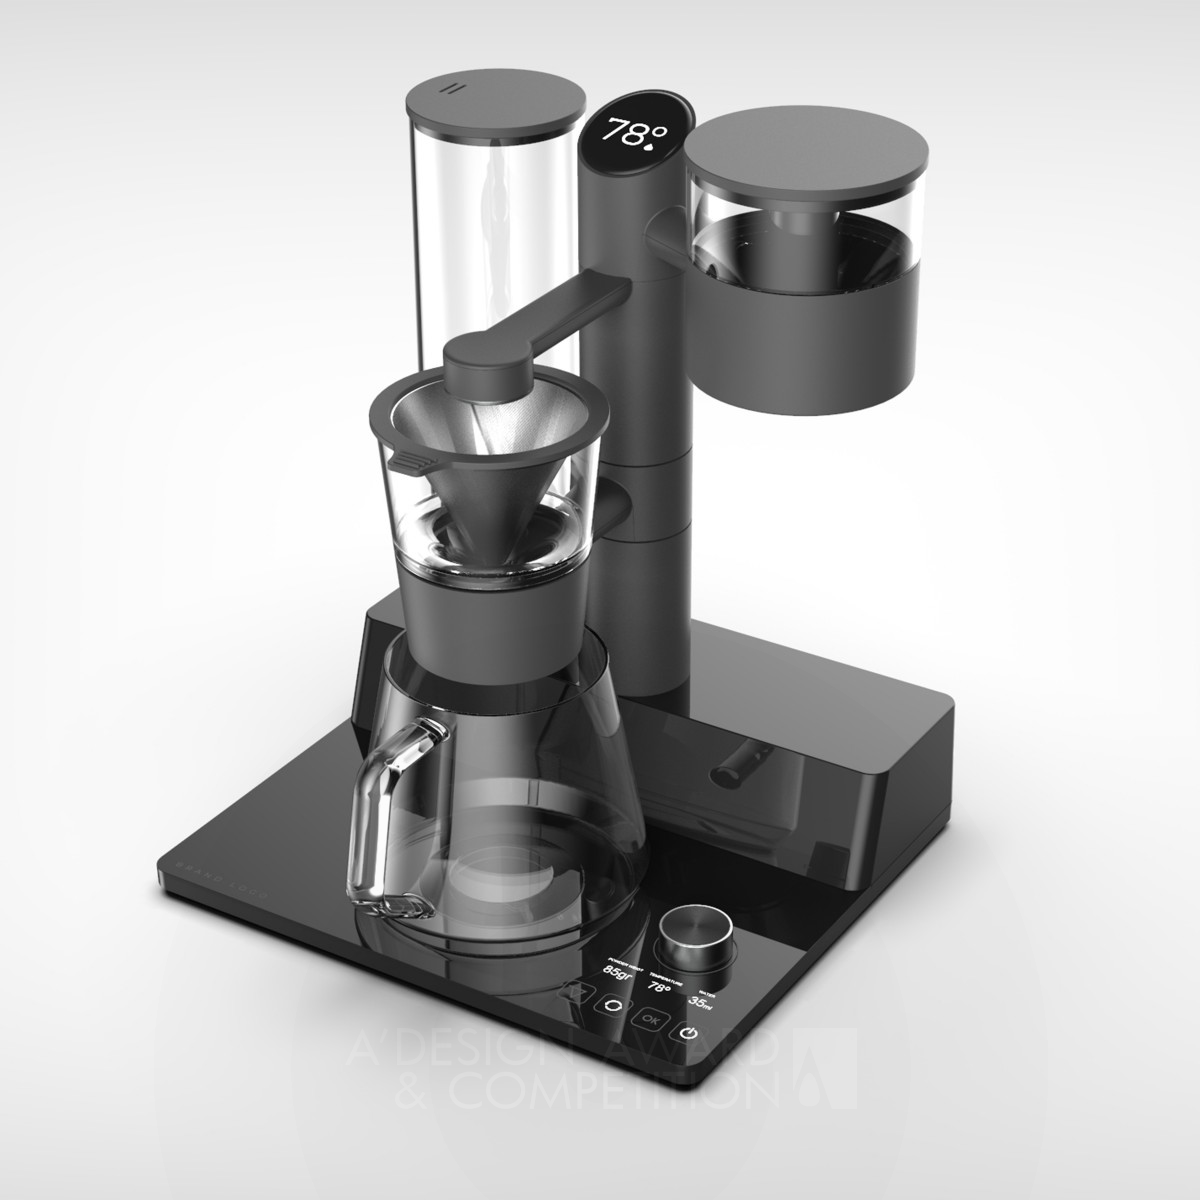 Wsd  Speciality Coffee Maker by Nicola Zanetti